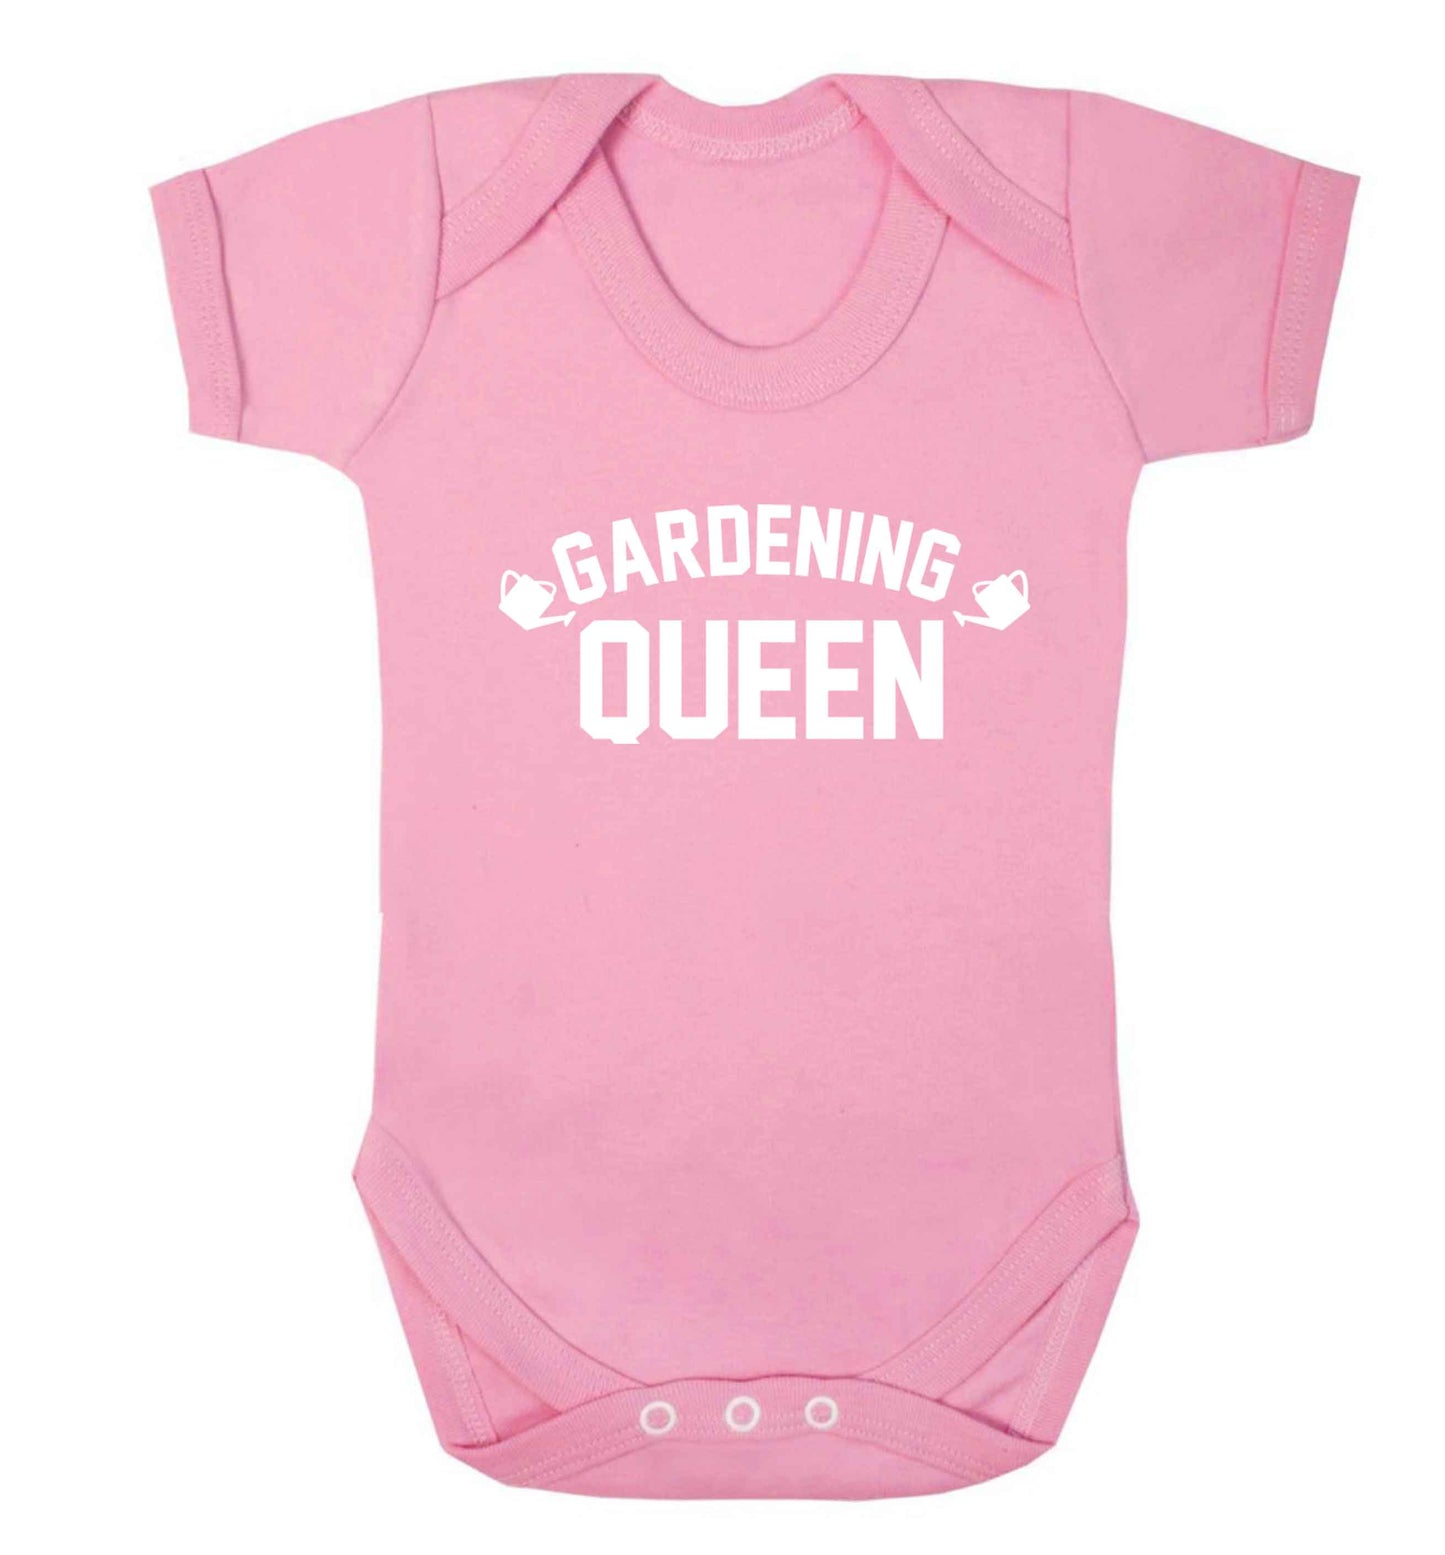 Gardening queen Baby Vest pale pink 18-24 months